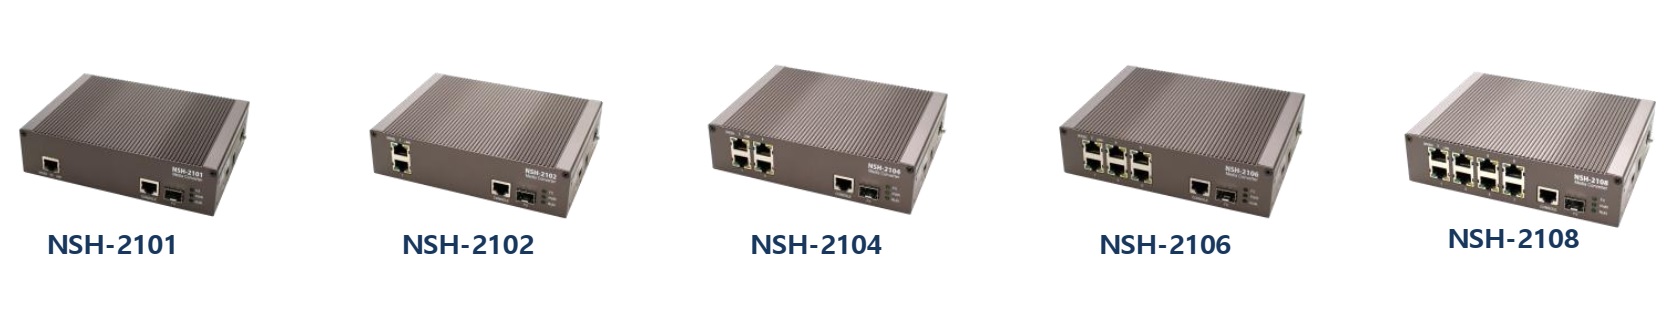 Converter quang 4 cổng mạng NSH-2108